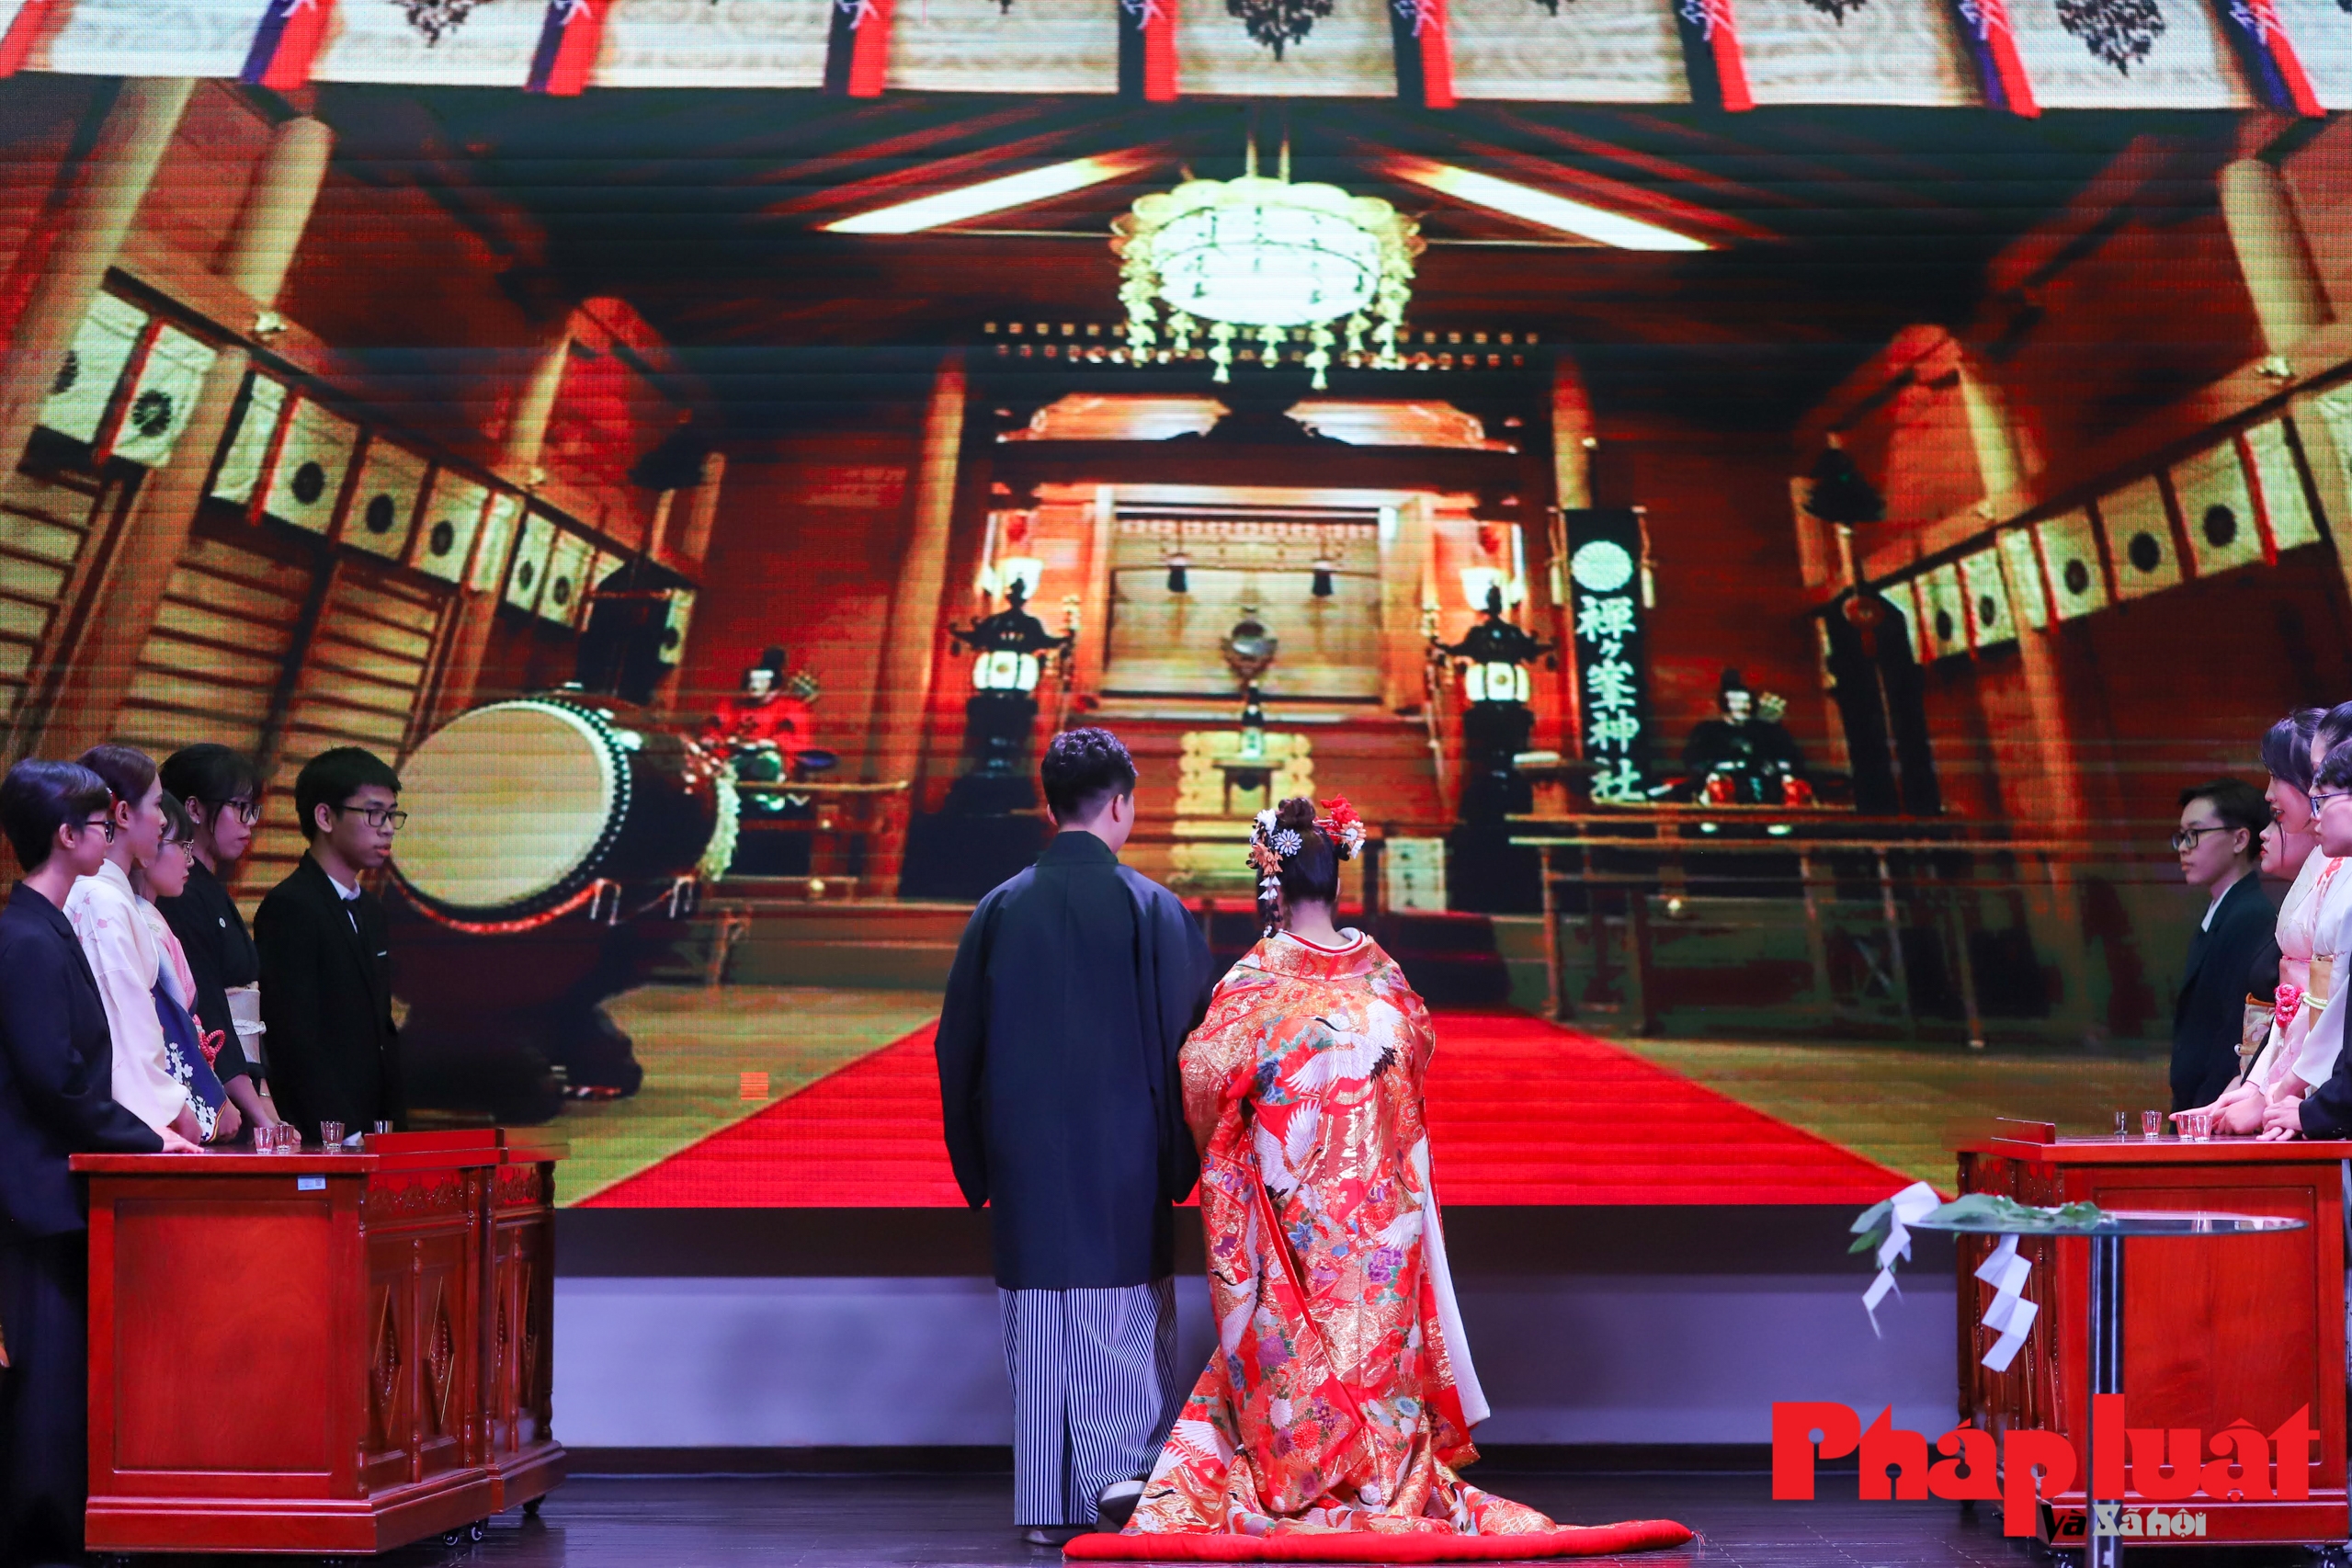 Lần đầu phỏng dựng đám cưới của người Nhật Bản theo nghi lễ Thần Đạo tại Việt Nam